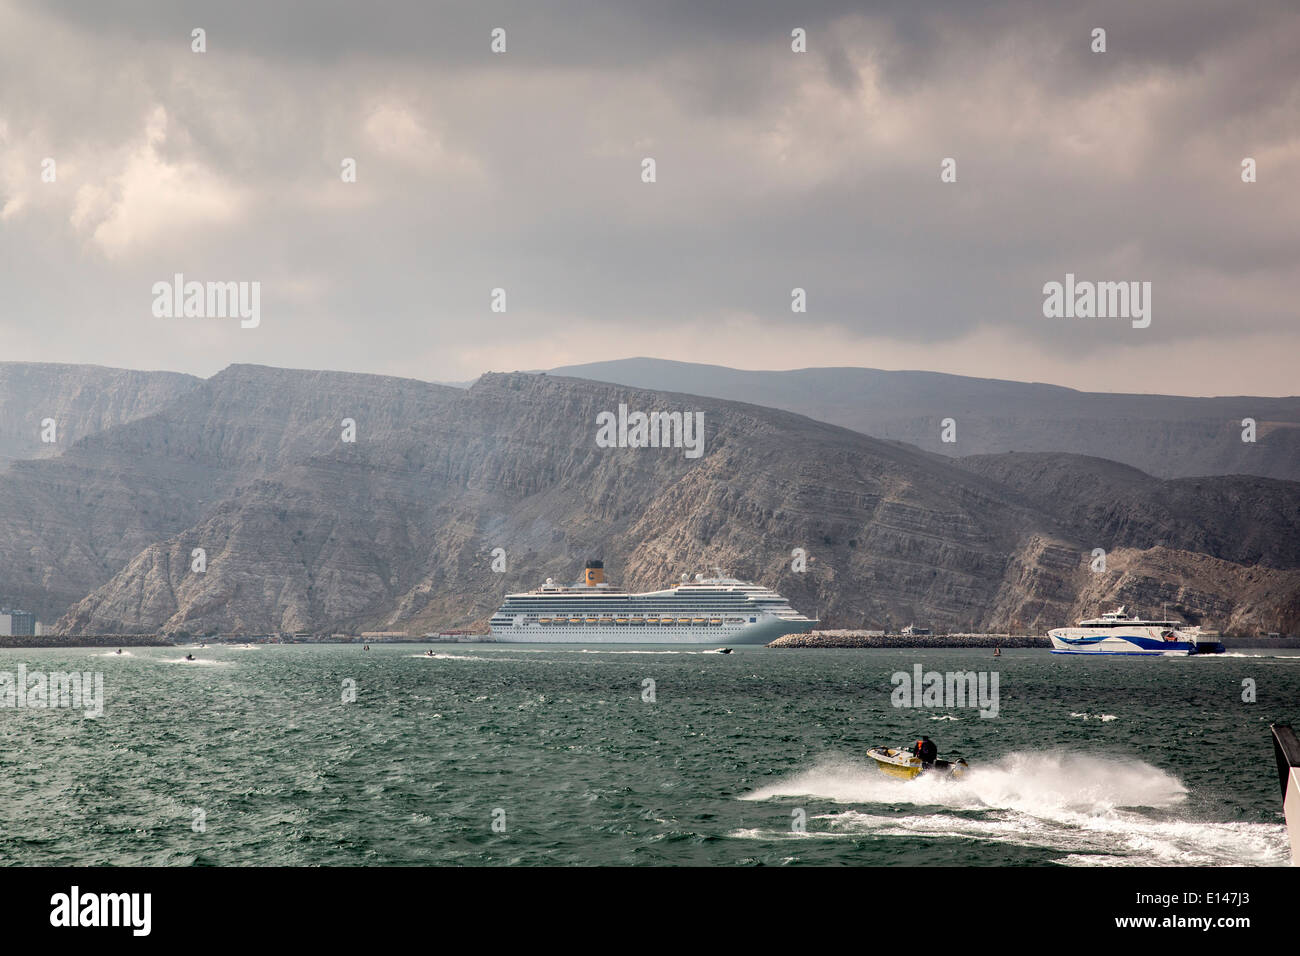 Oman, Khasab, Port, passeurs iraniens apporter des marchandises retour à l'Iran avec de petites embarcations. Bateau de croisière Costa Fortuna Banque D'Images